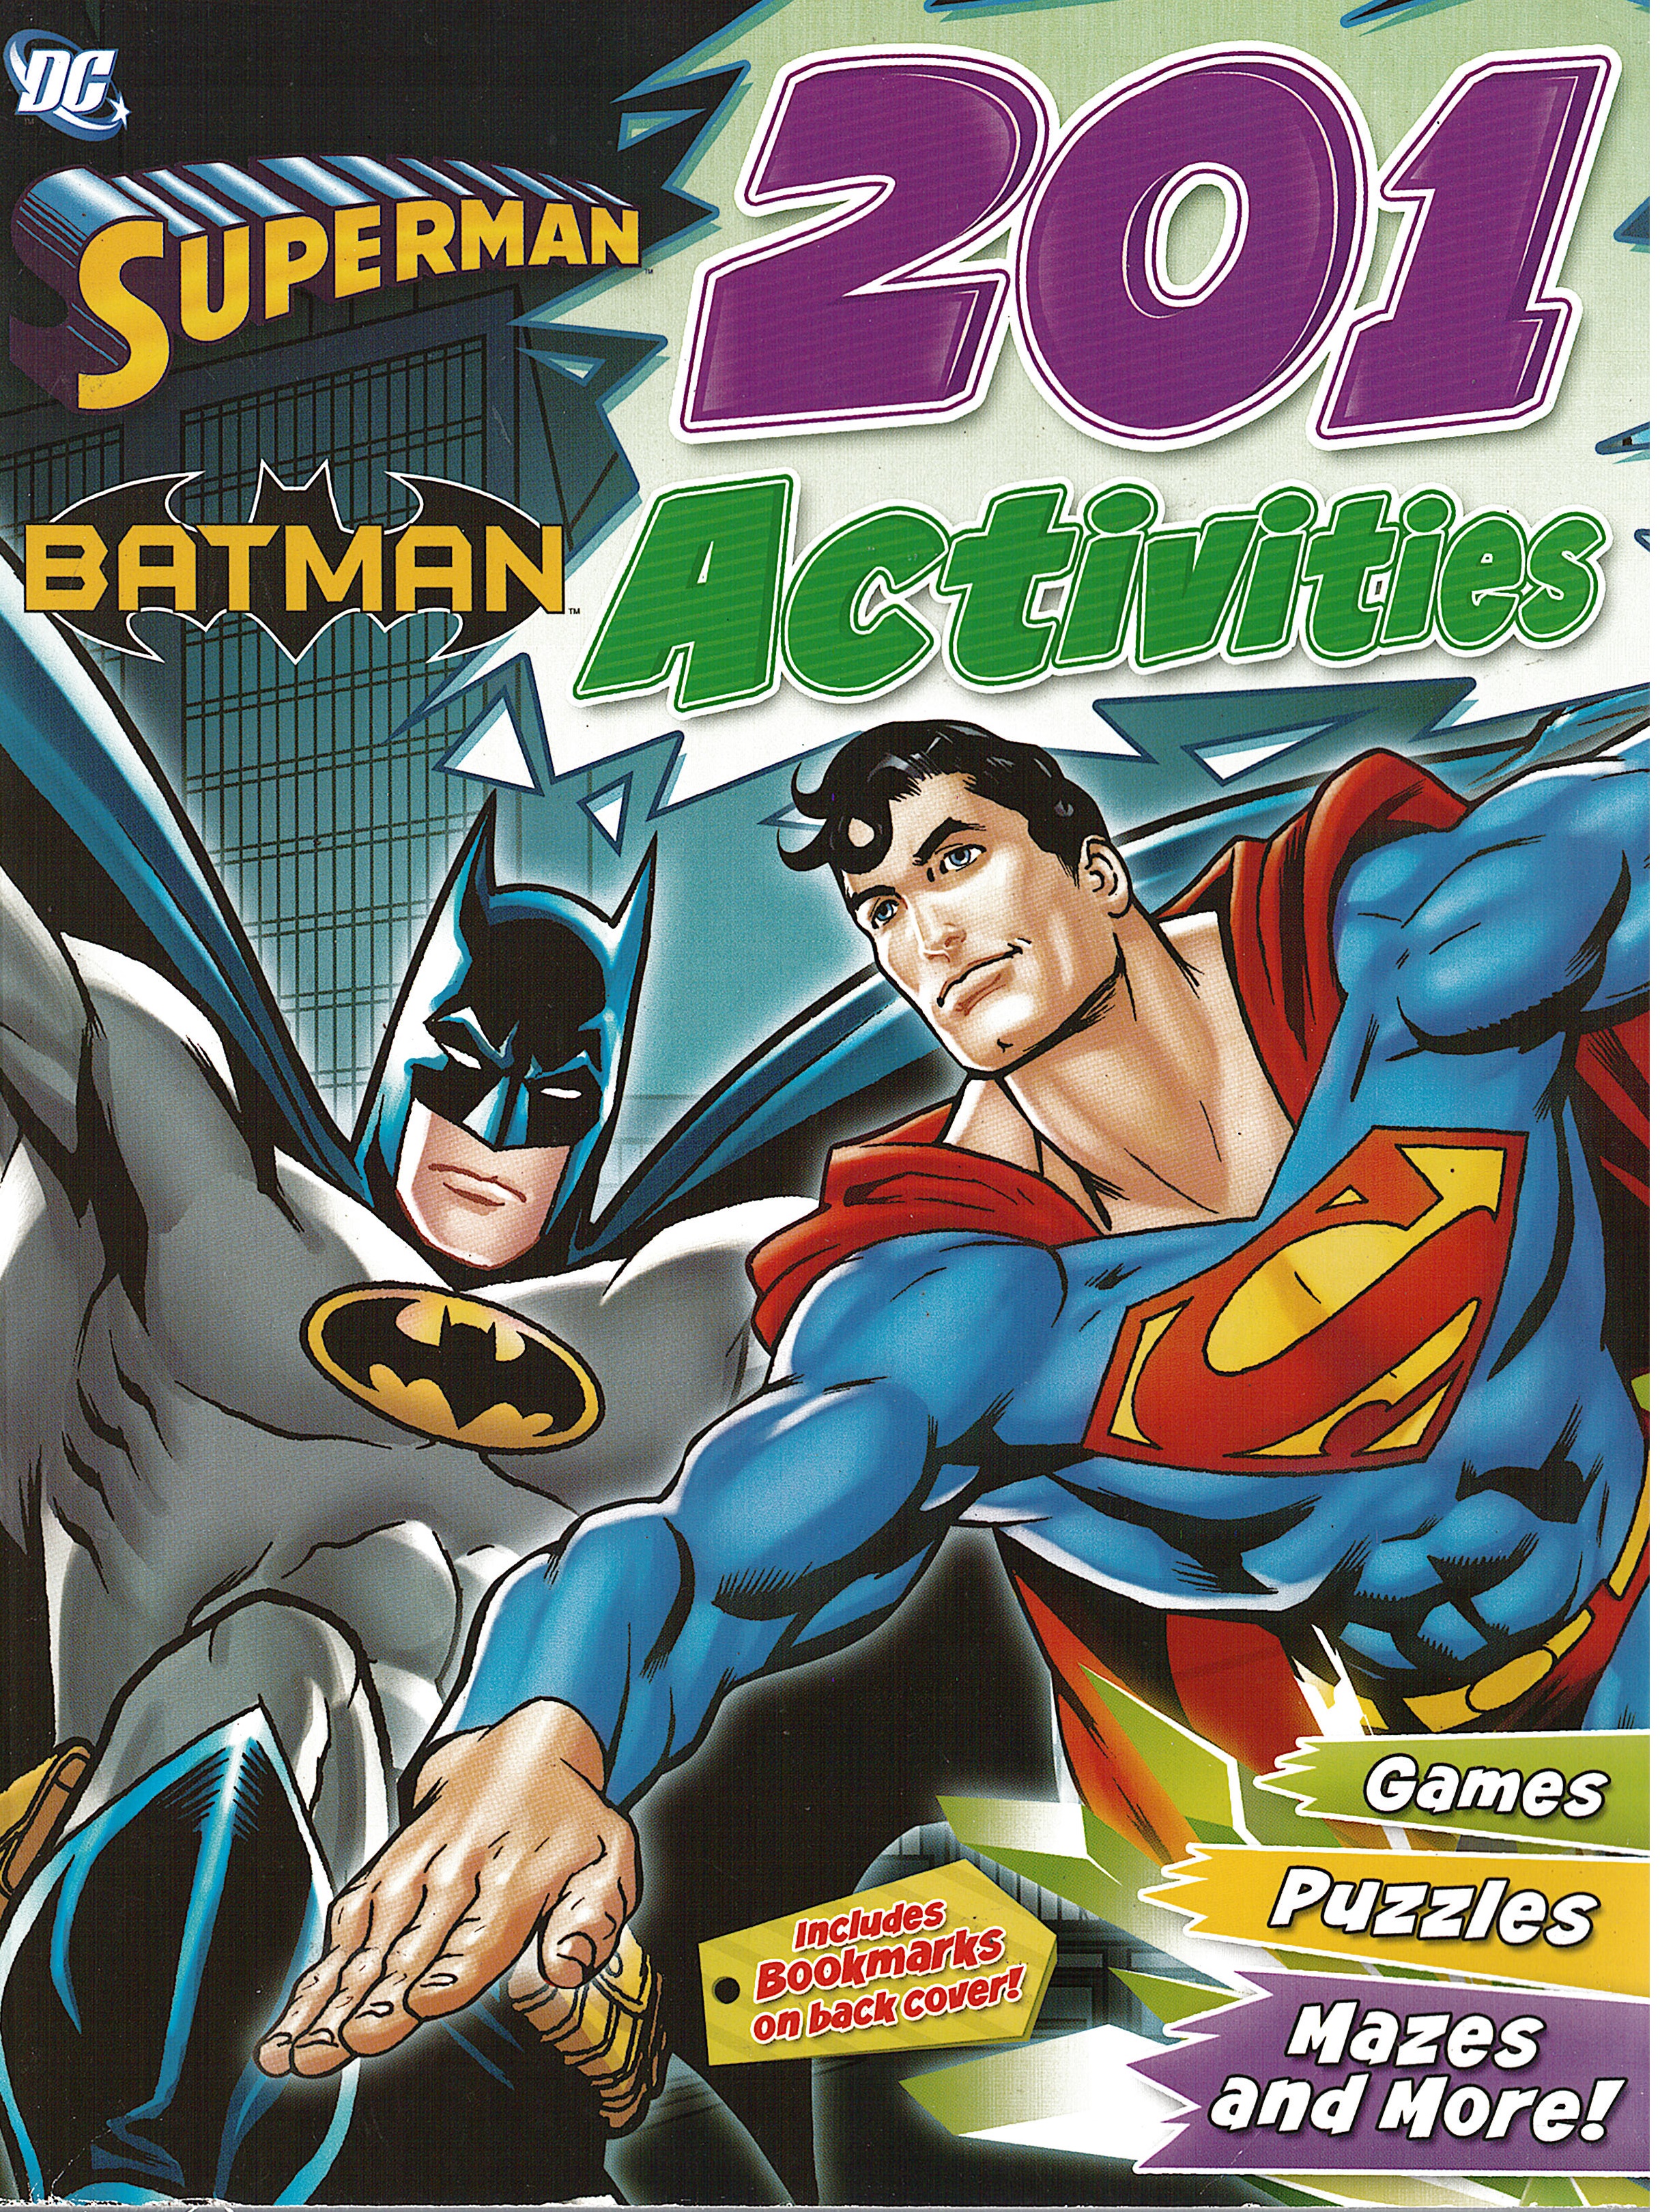 Superman Batman 201 Activities